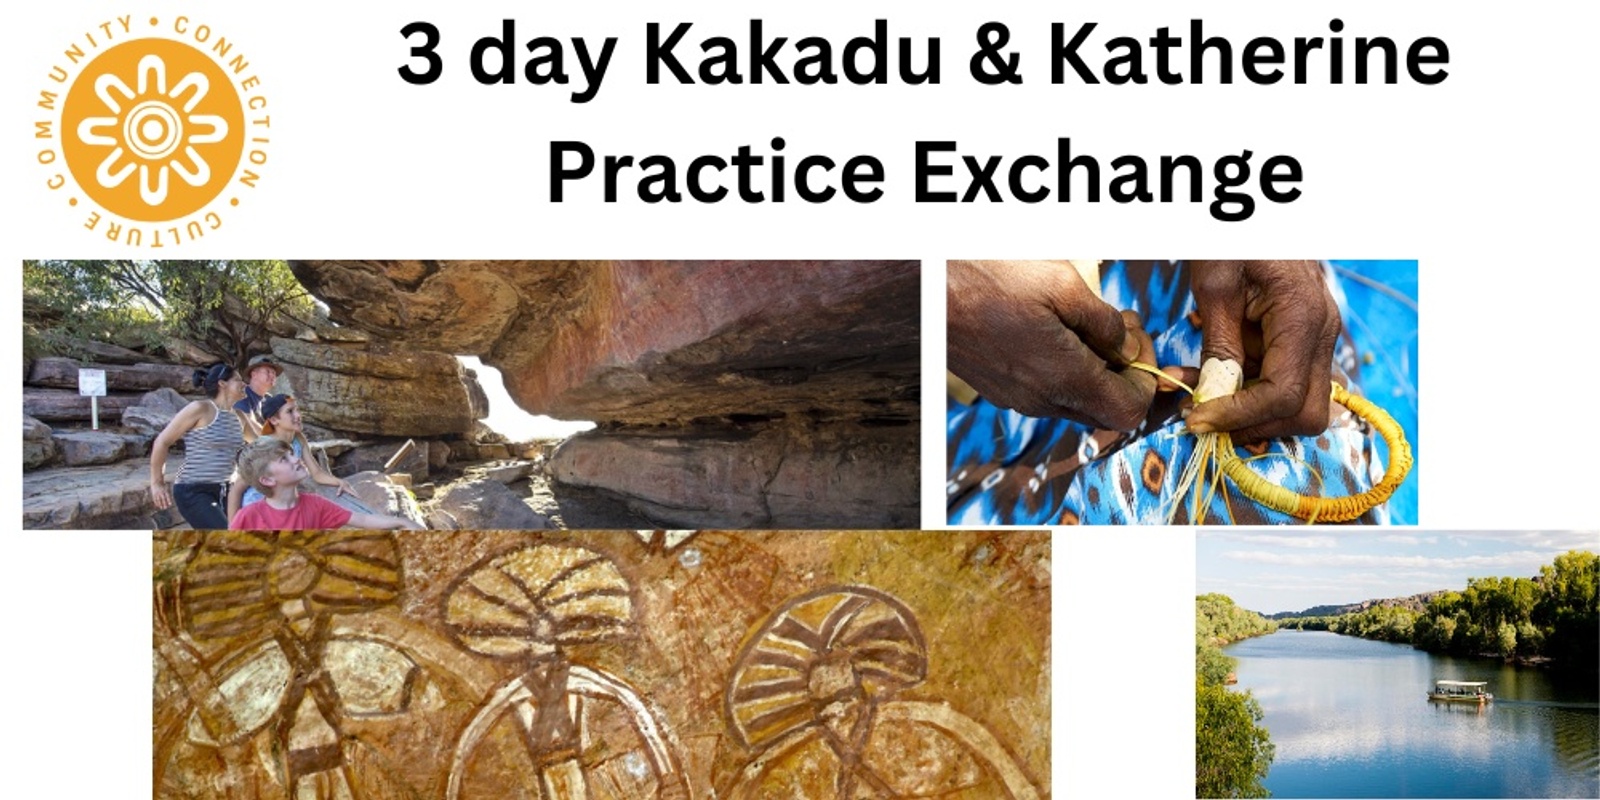 3 day Kakadu & Katherine Practice Exchange